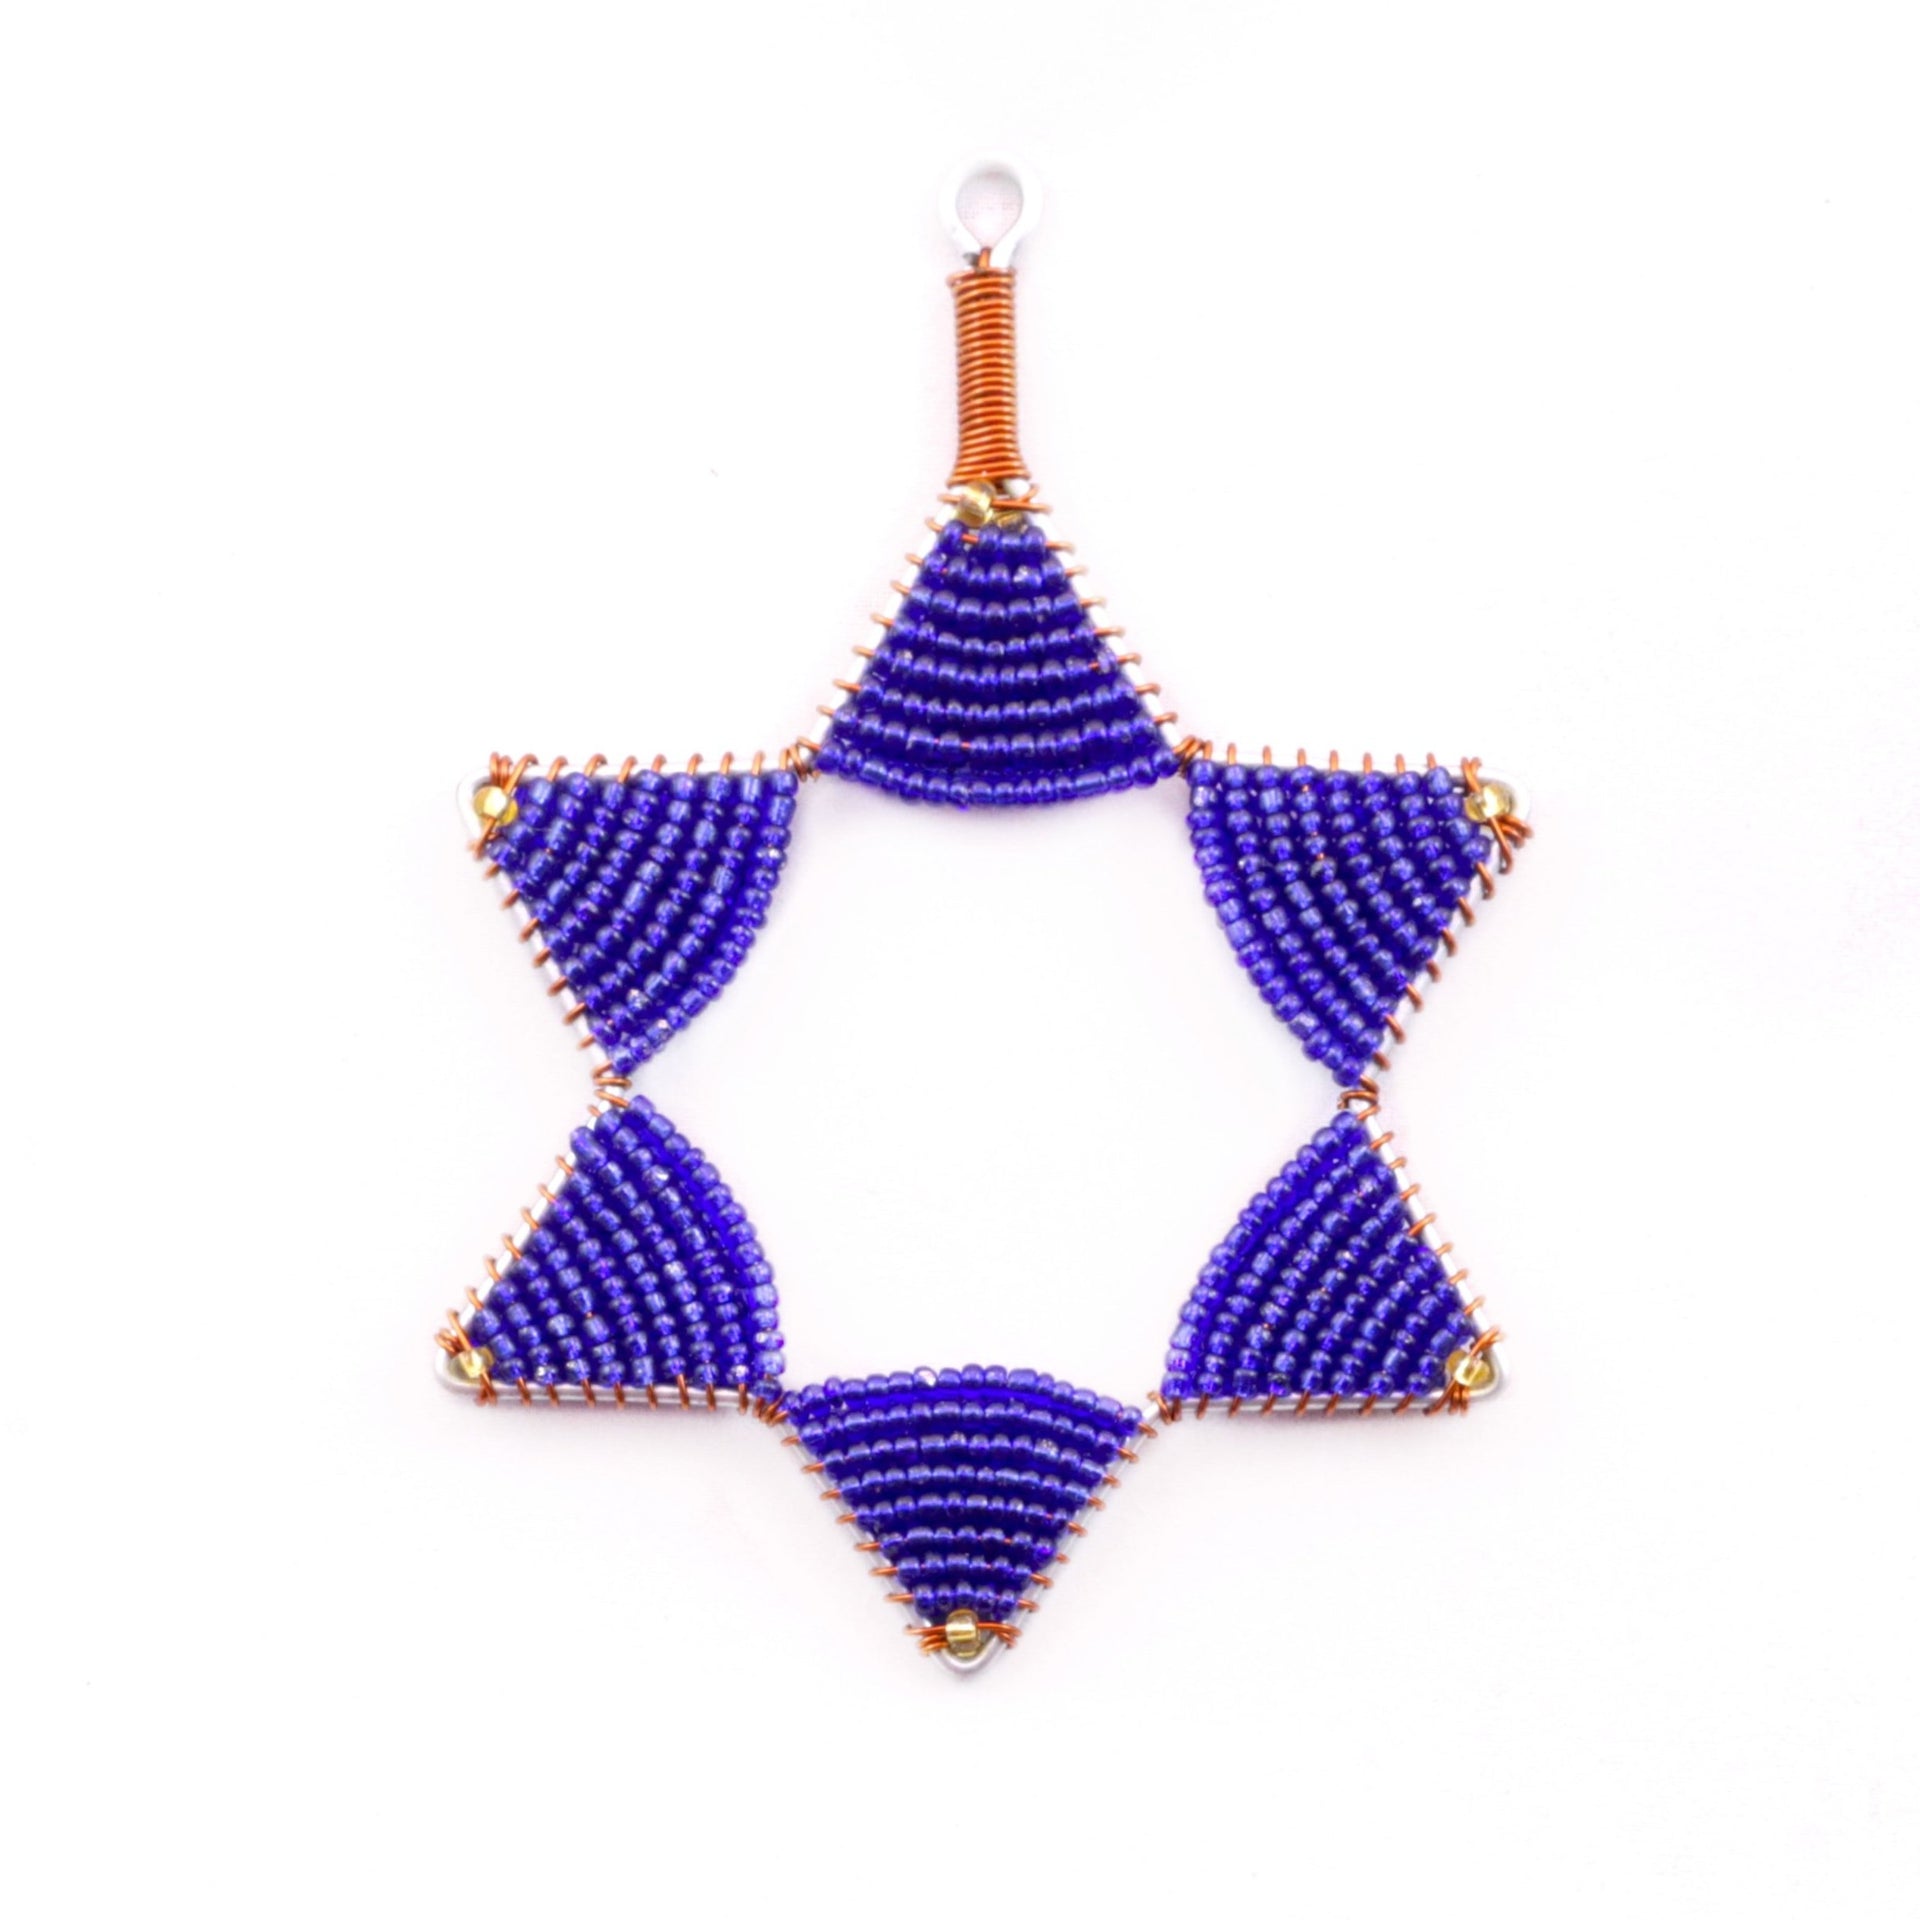 Star of David Hanukkah Ornament Fair Trade